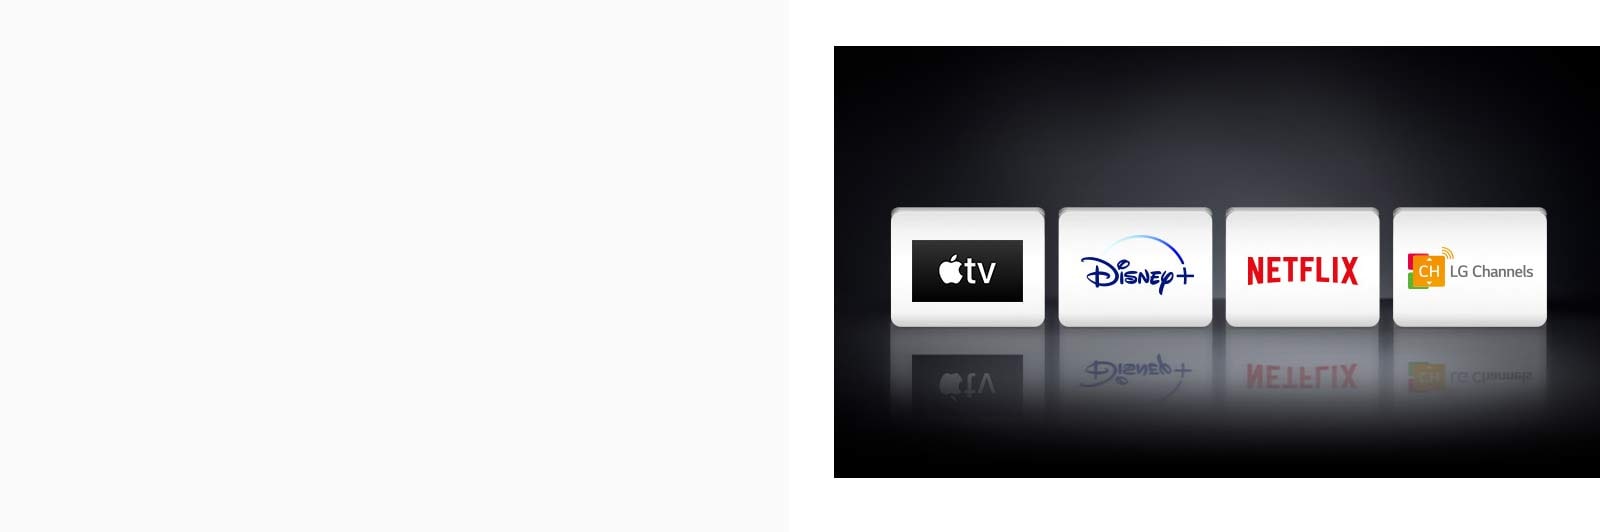 Se muestran cuatro logos de aplicaciones de izquierda a derecha: Apple TV, Disney+, Netflix y LG Channels.